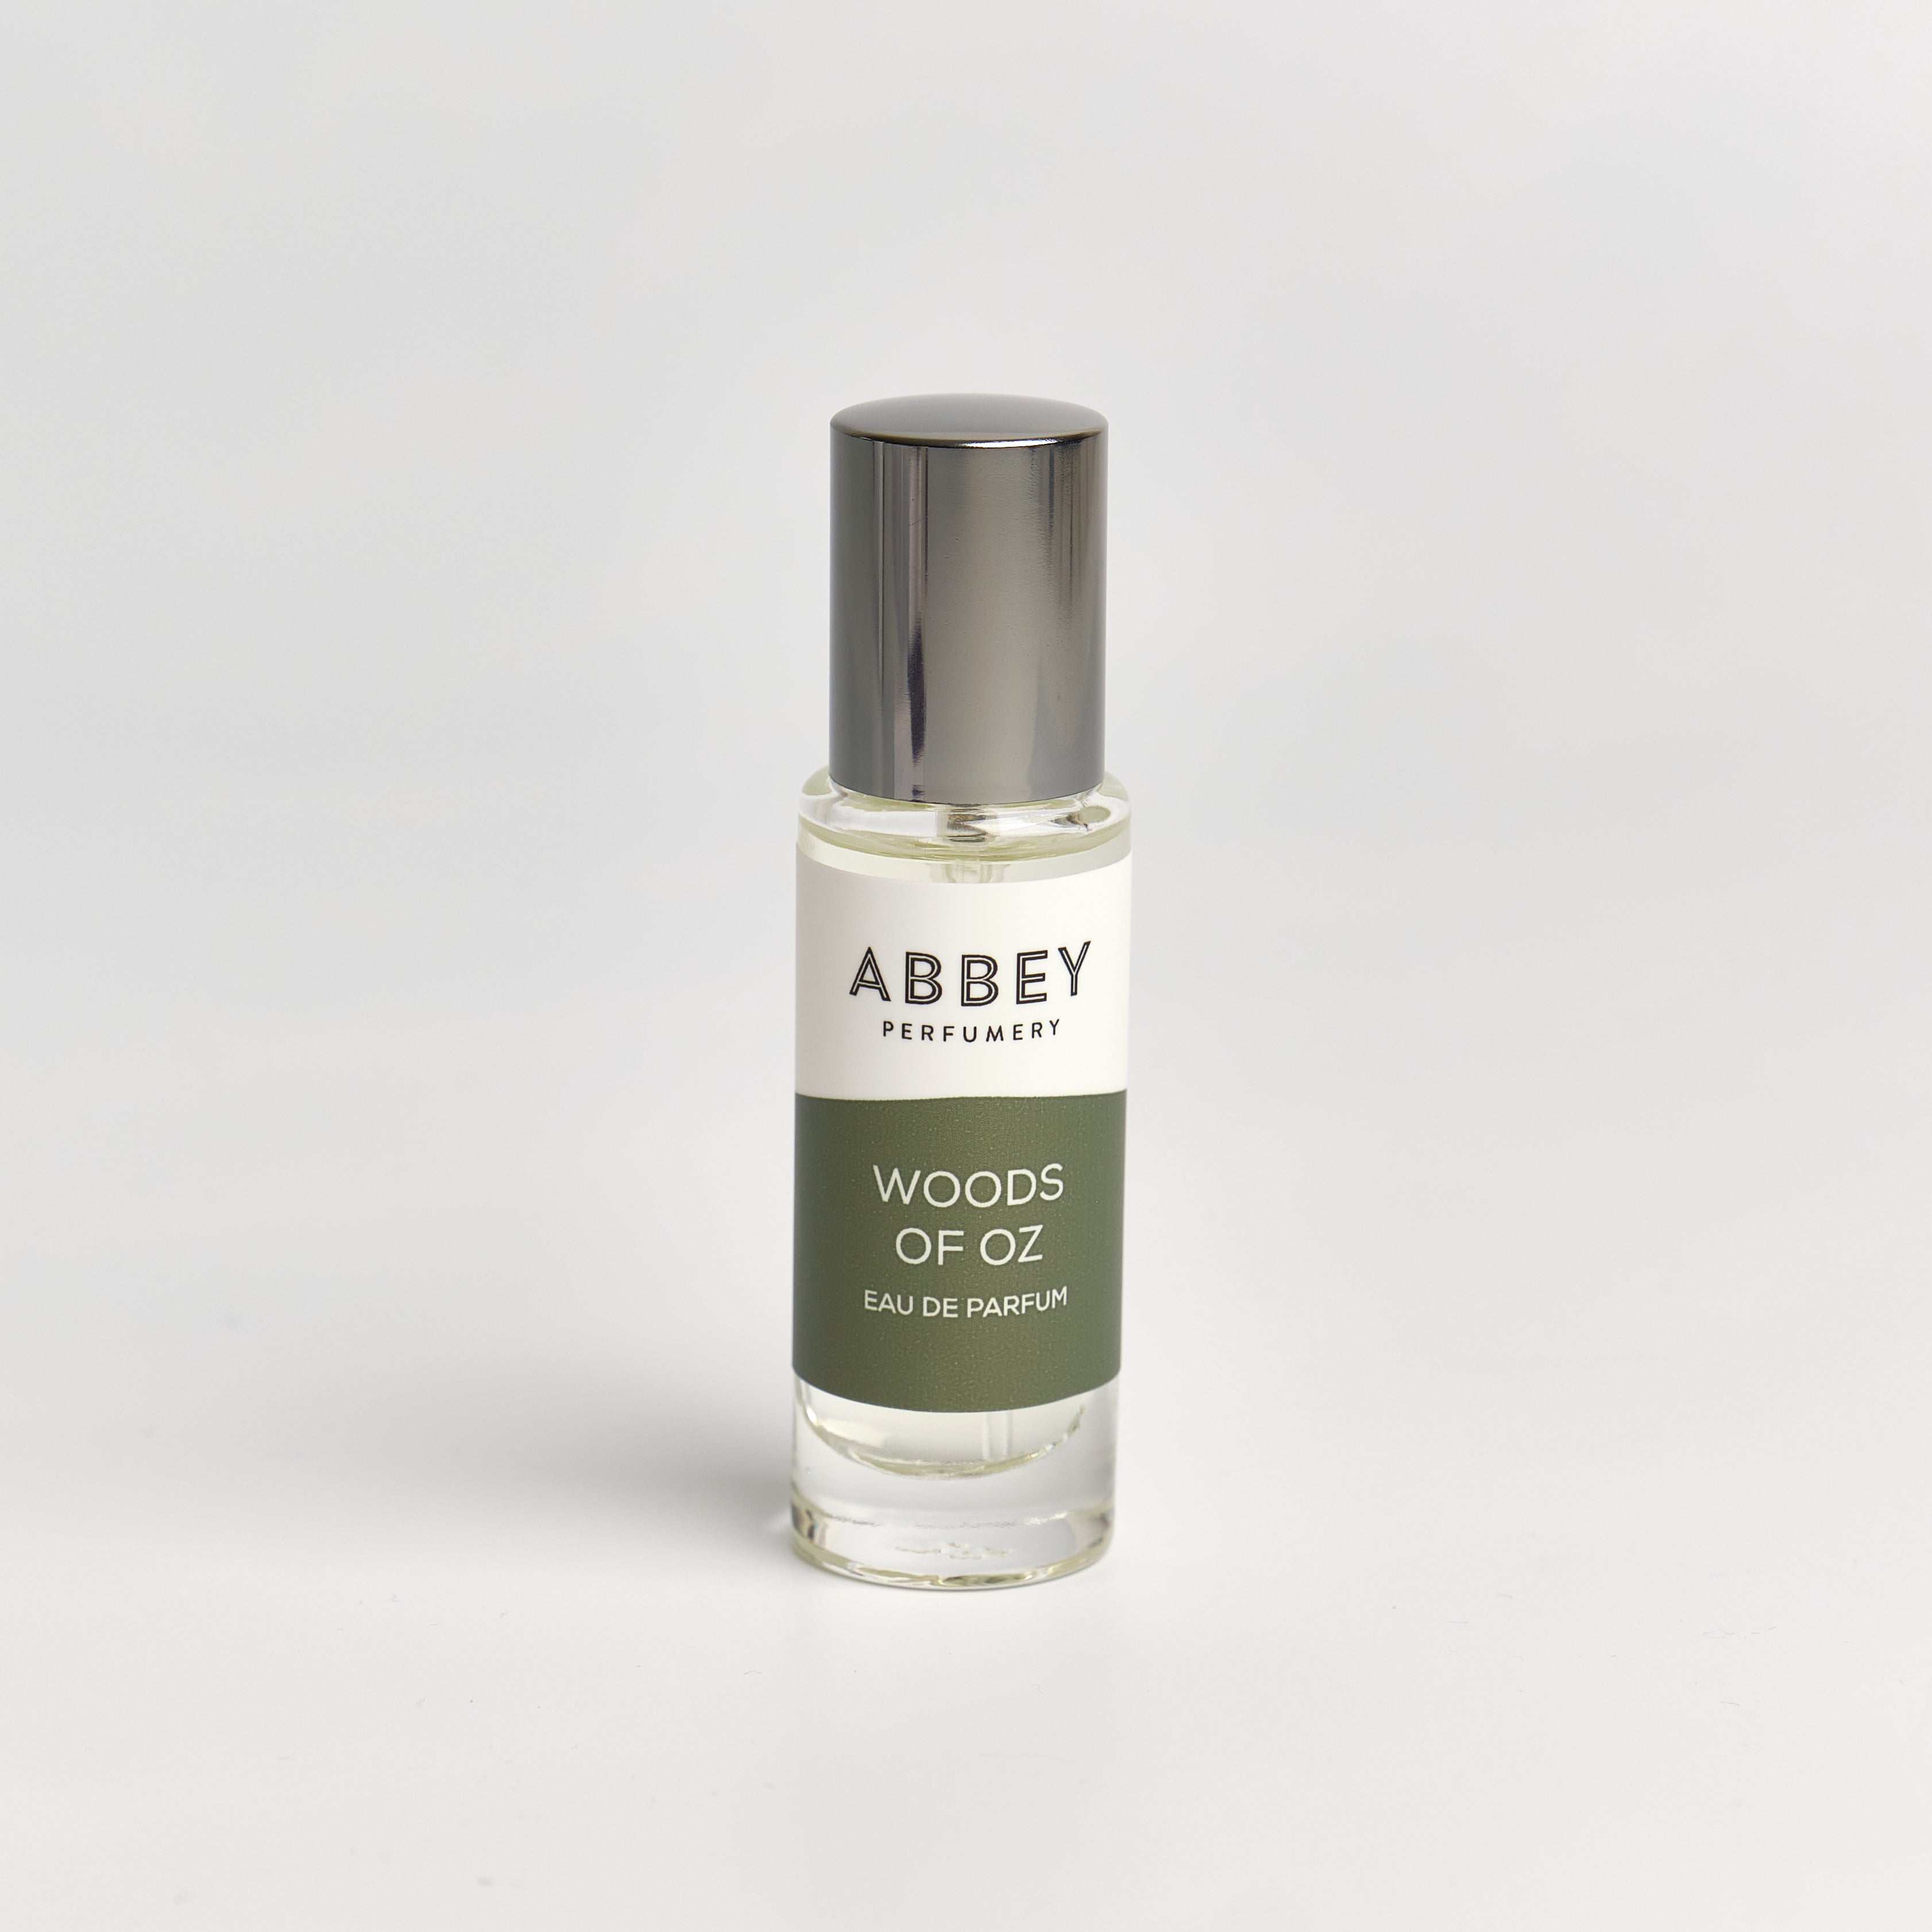 Woods of Oz perfume bottle 10ml on white background